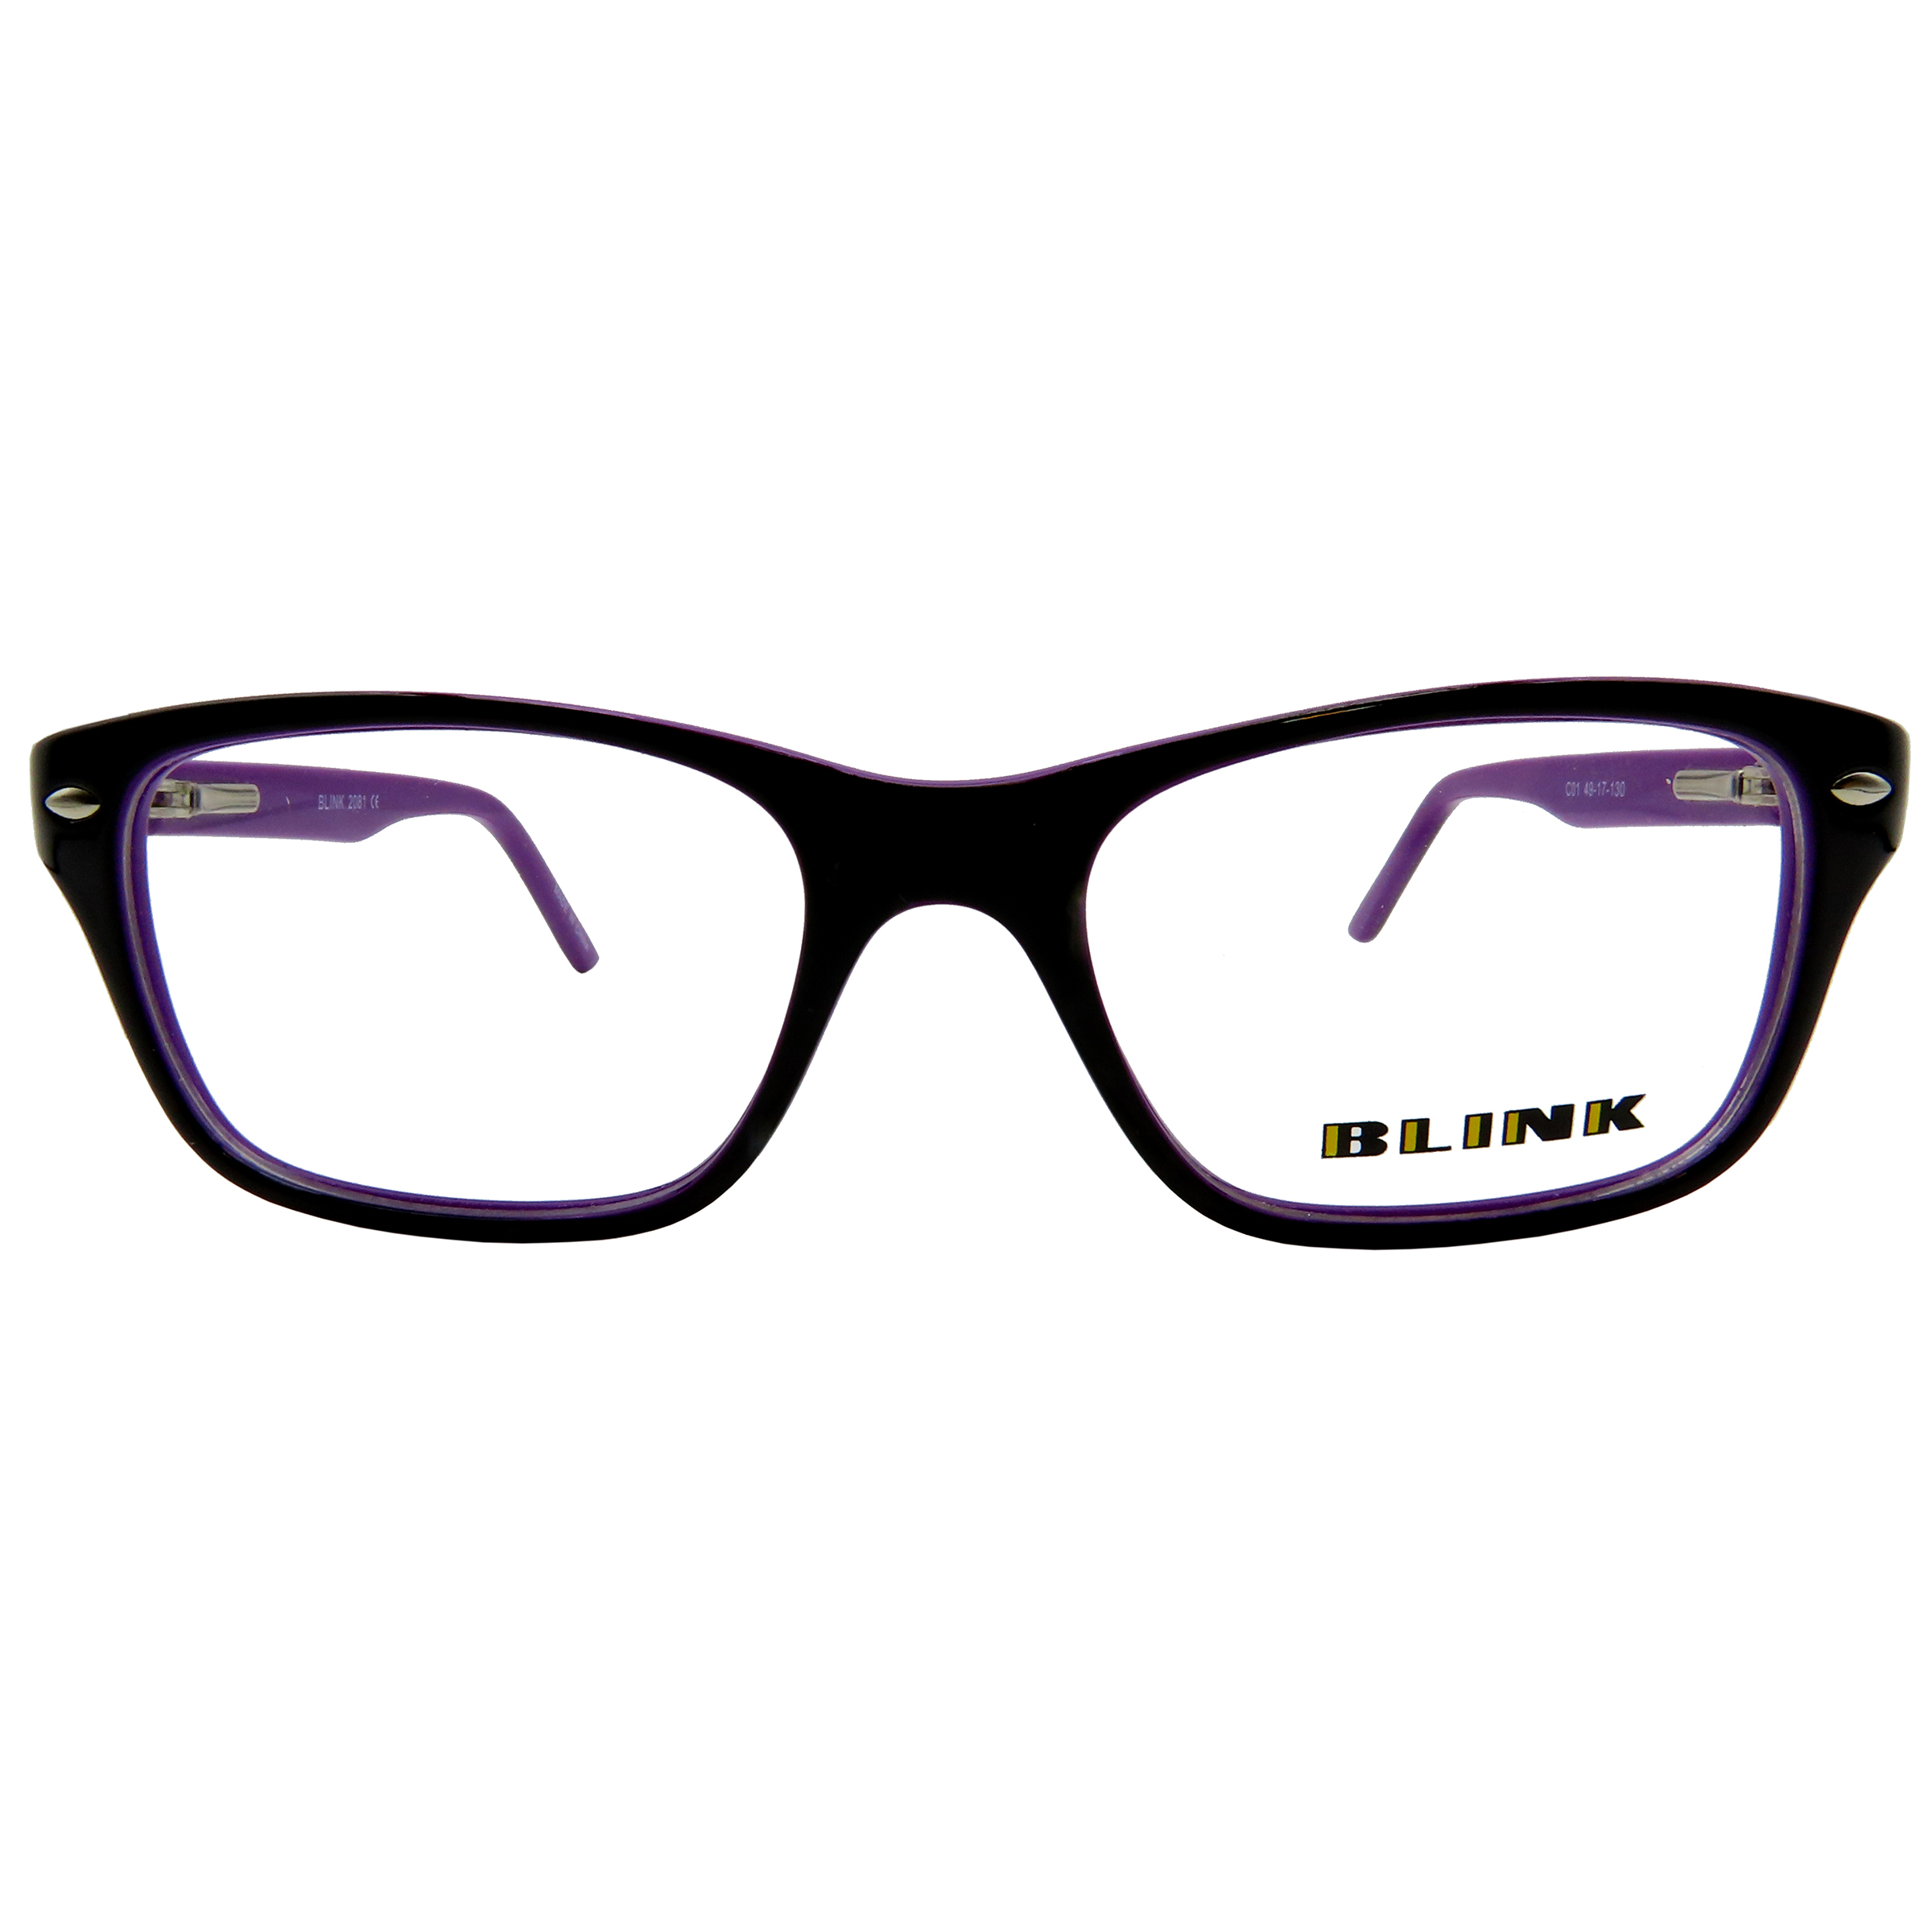 فریم عینک طبی دخترانه بلینک مدل 2081-C1